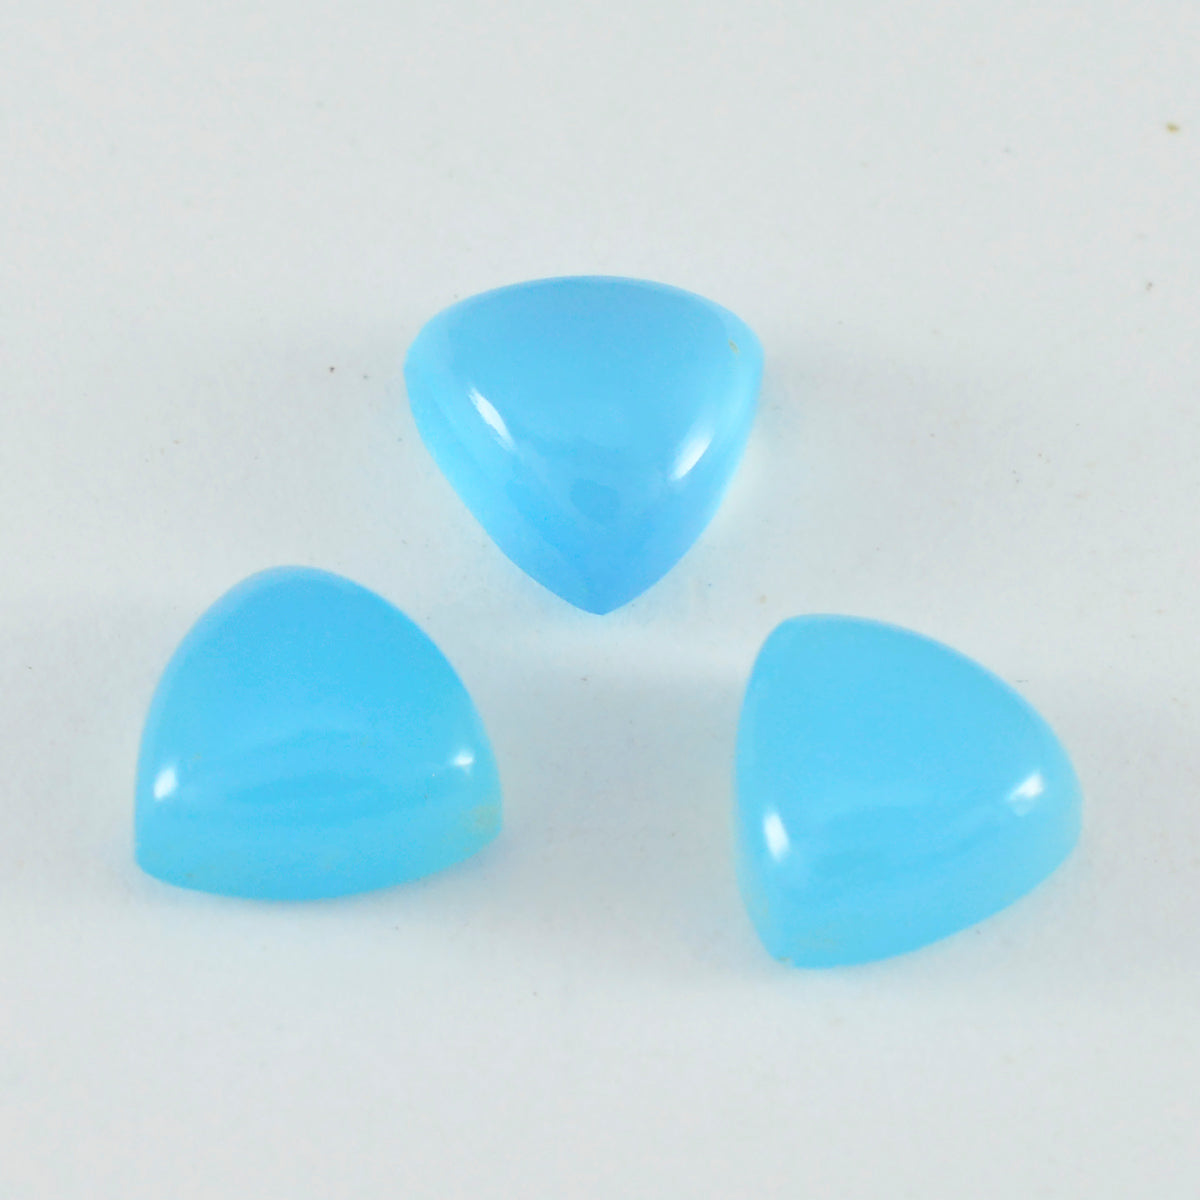 Riyogems 1PC blauwe chalcedoon cabochon 8x8 mm biljoen vorm verbazingwekkende kwaliteit losse steen